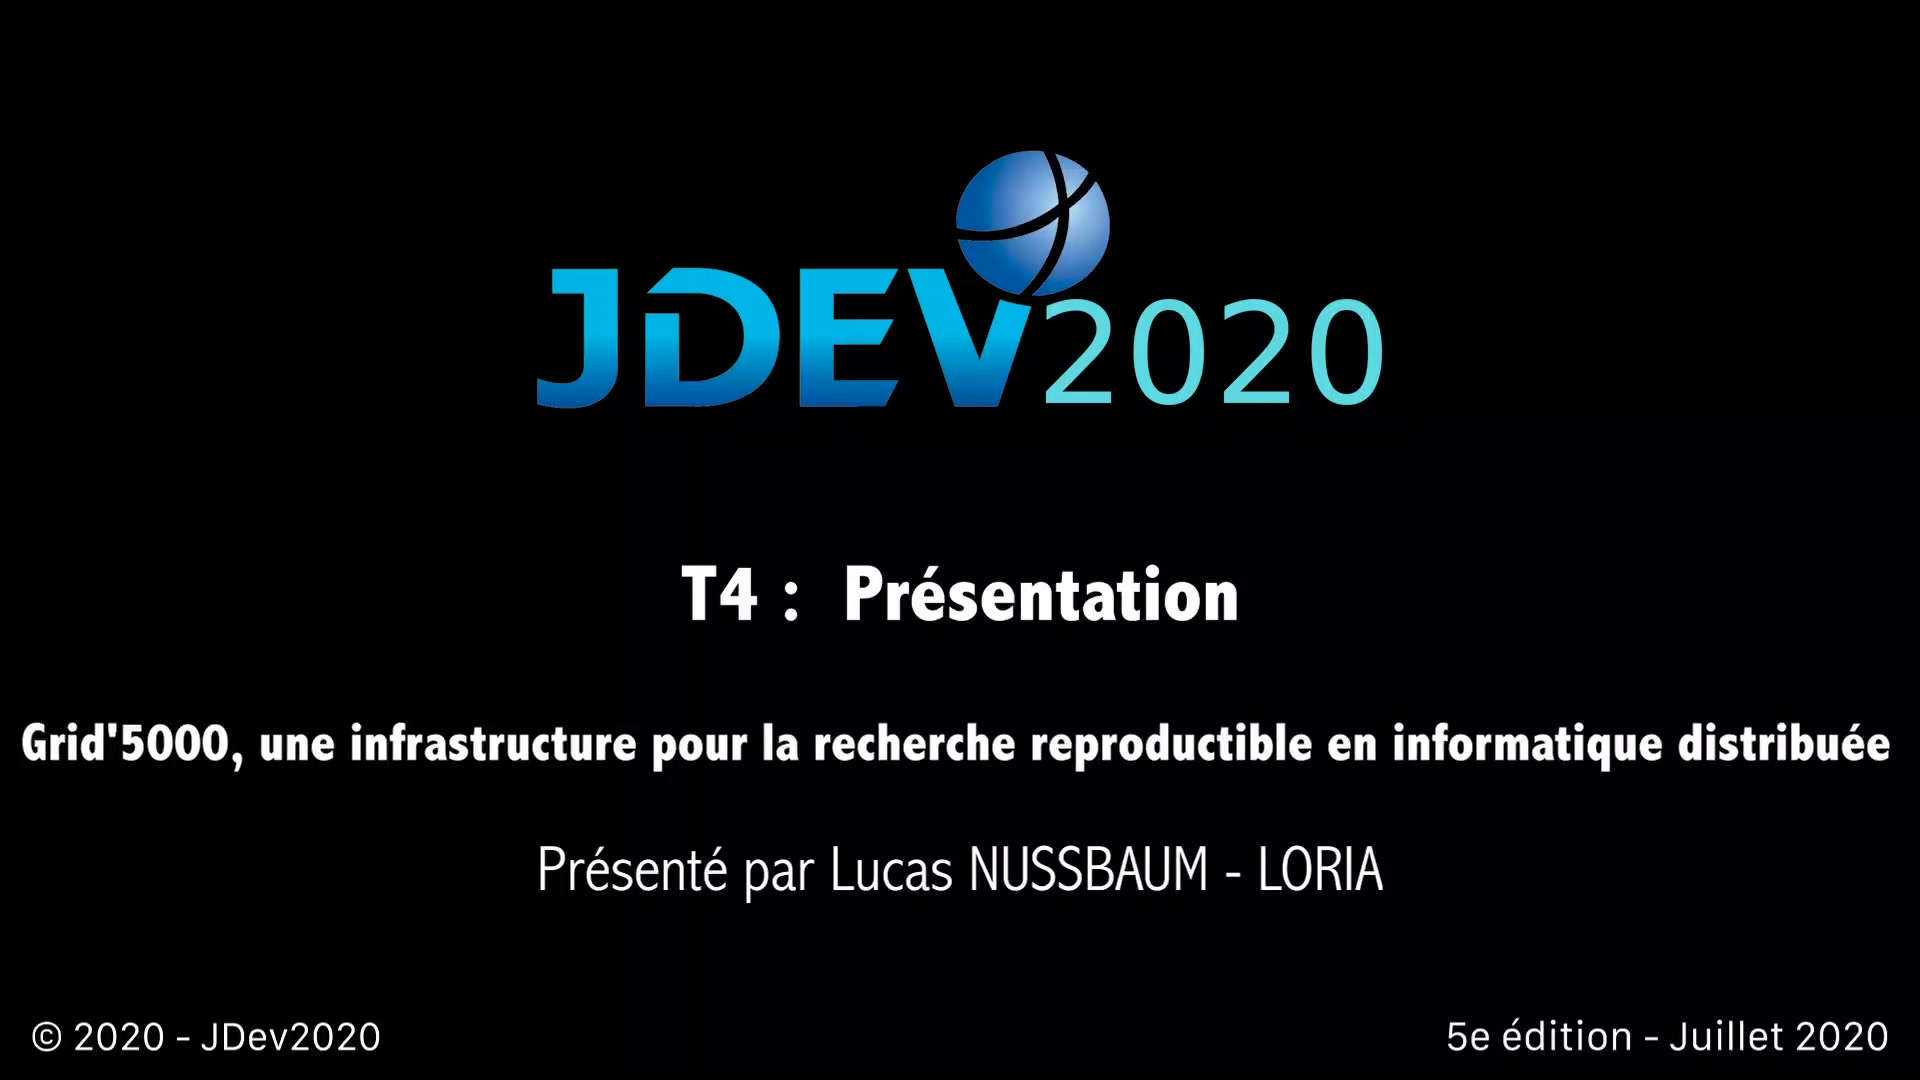 JDev2020 : T4 : Grid'5000, une infrastructure pour la recherche reproductible en informatique distribuée